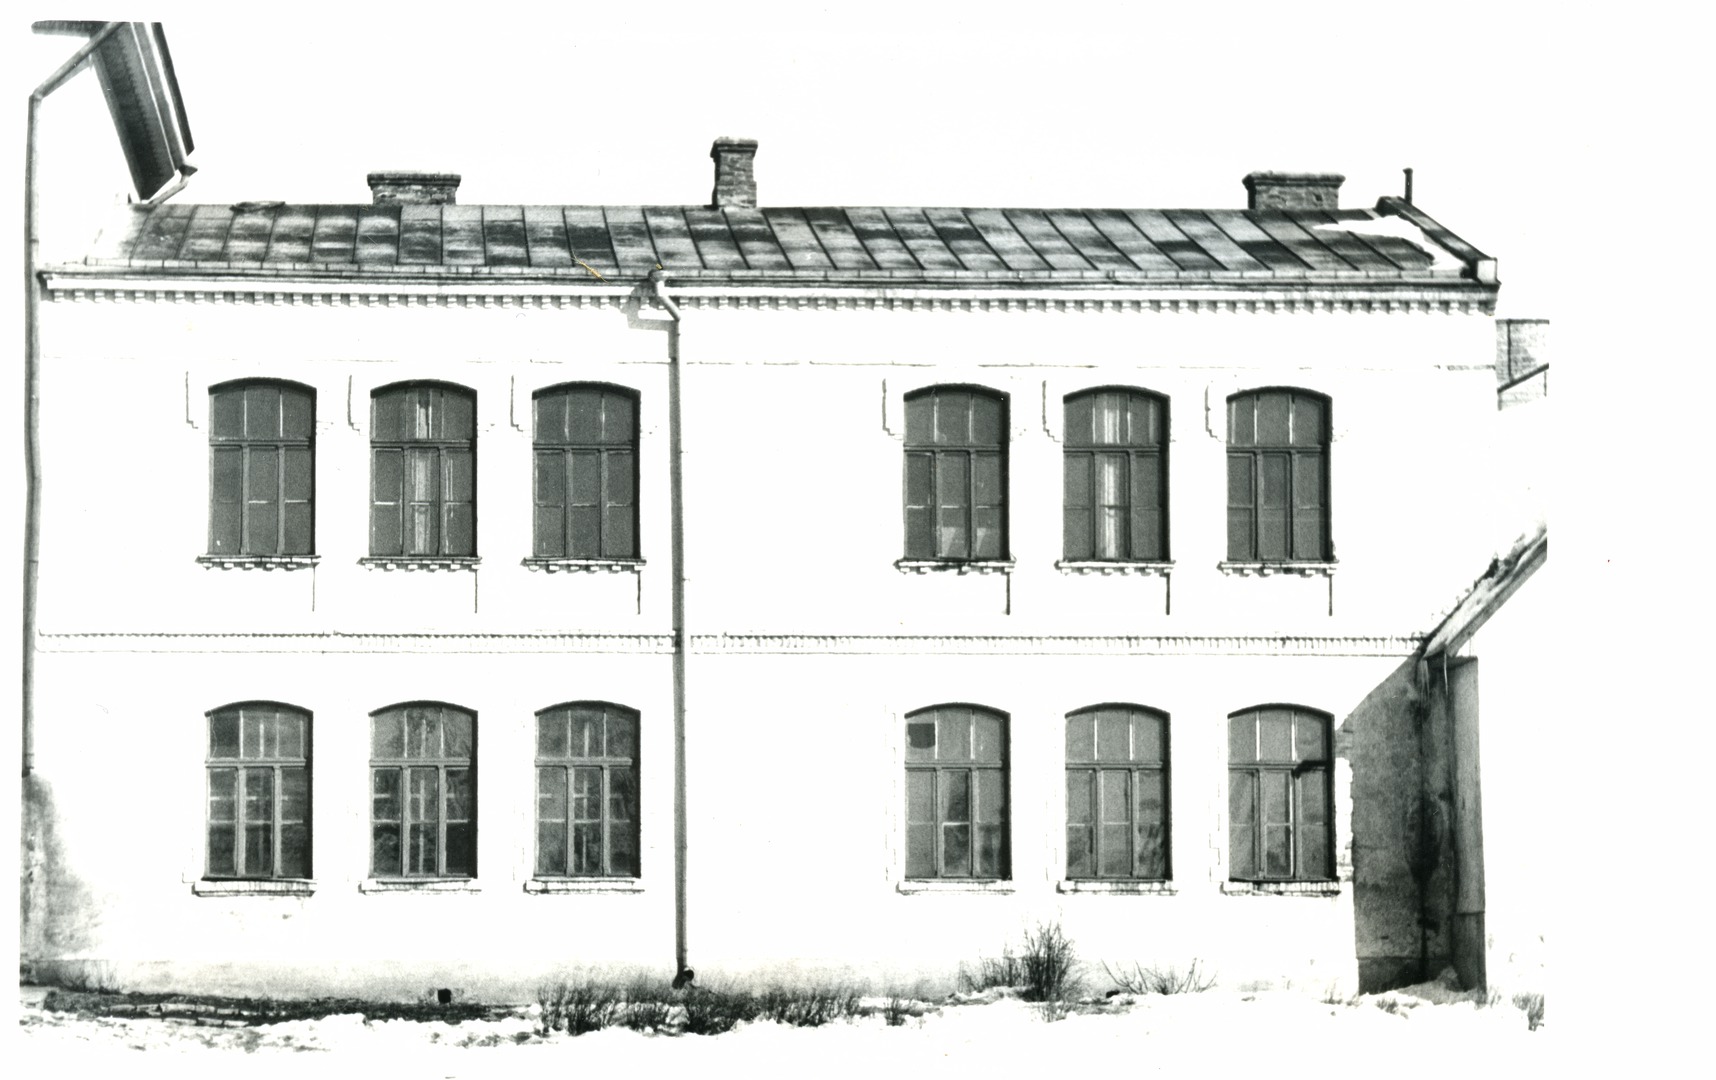 Haapsalu City School building